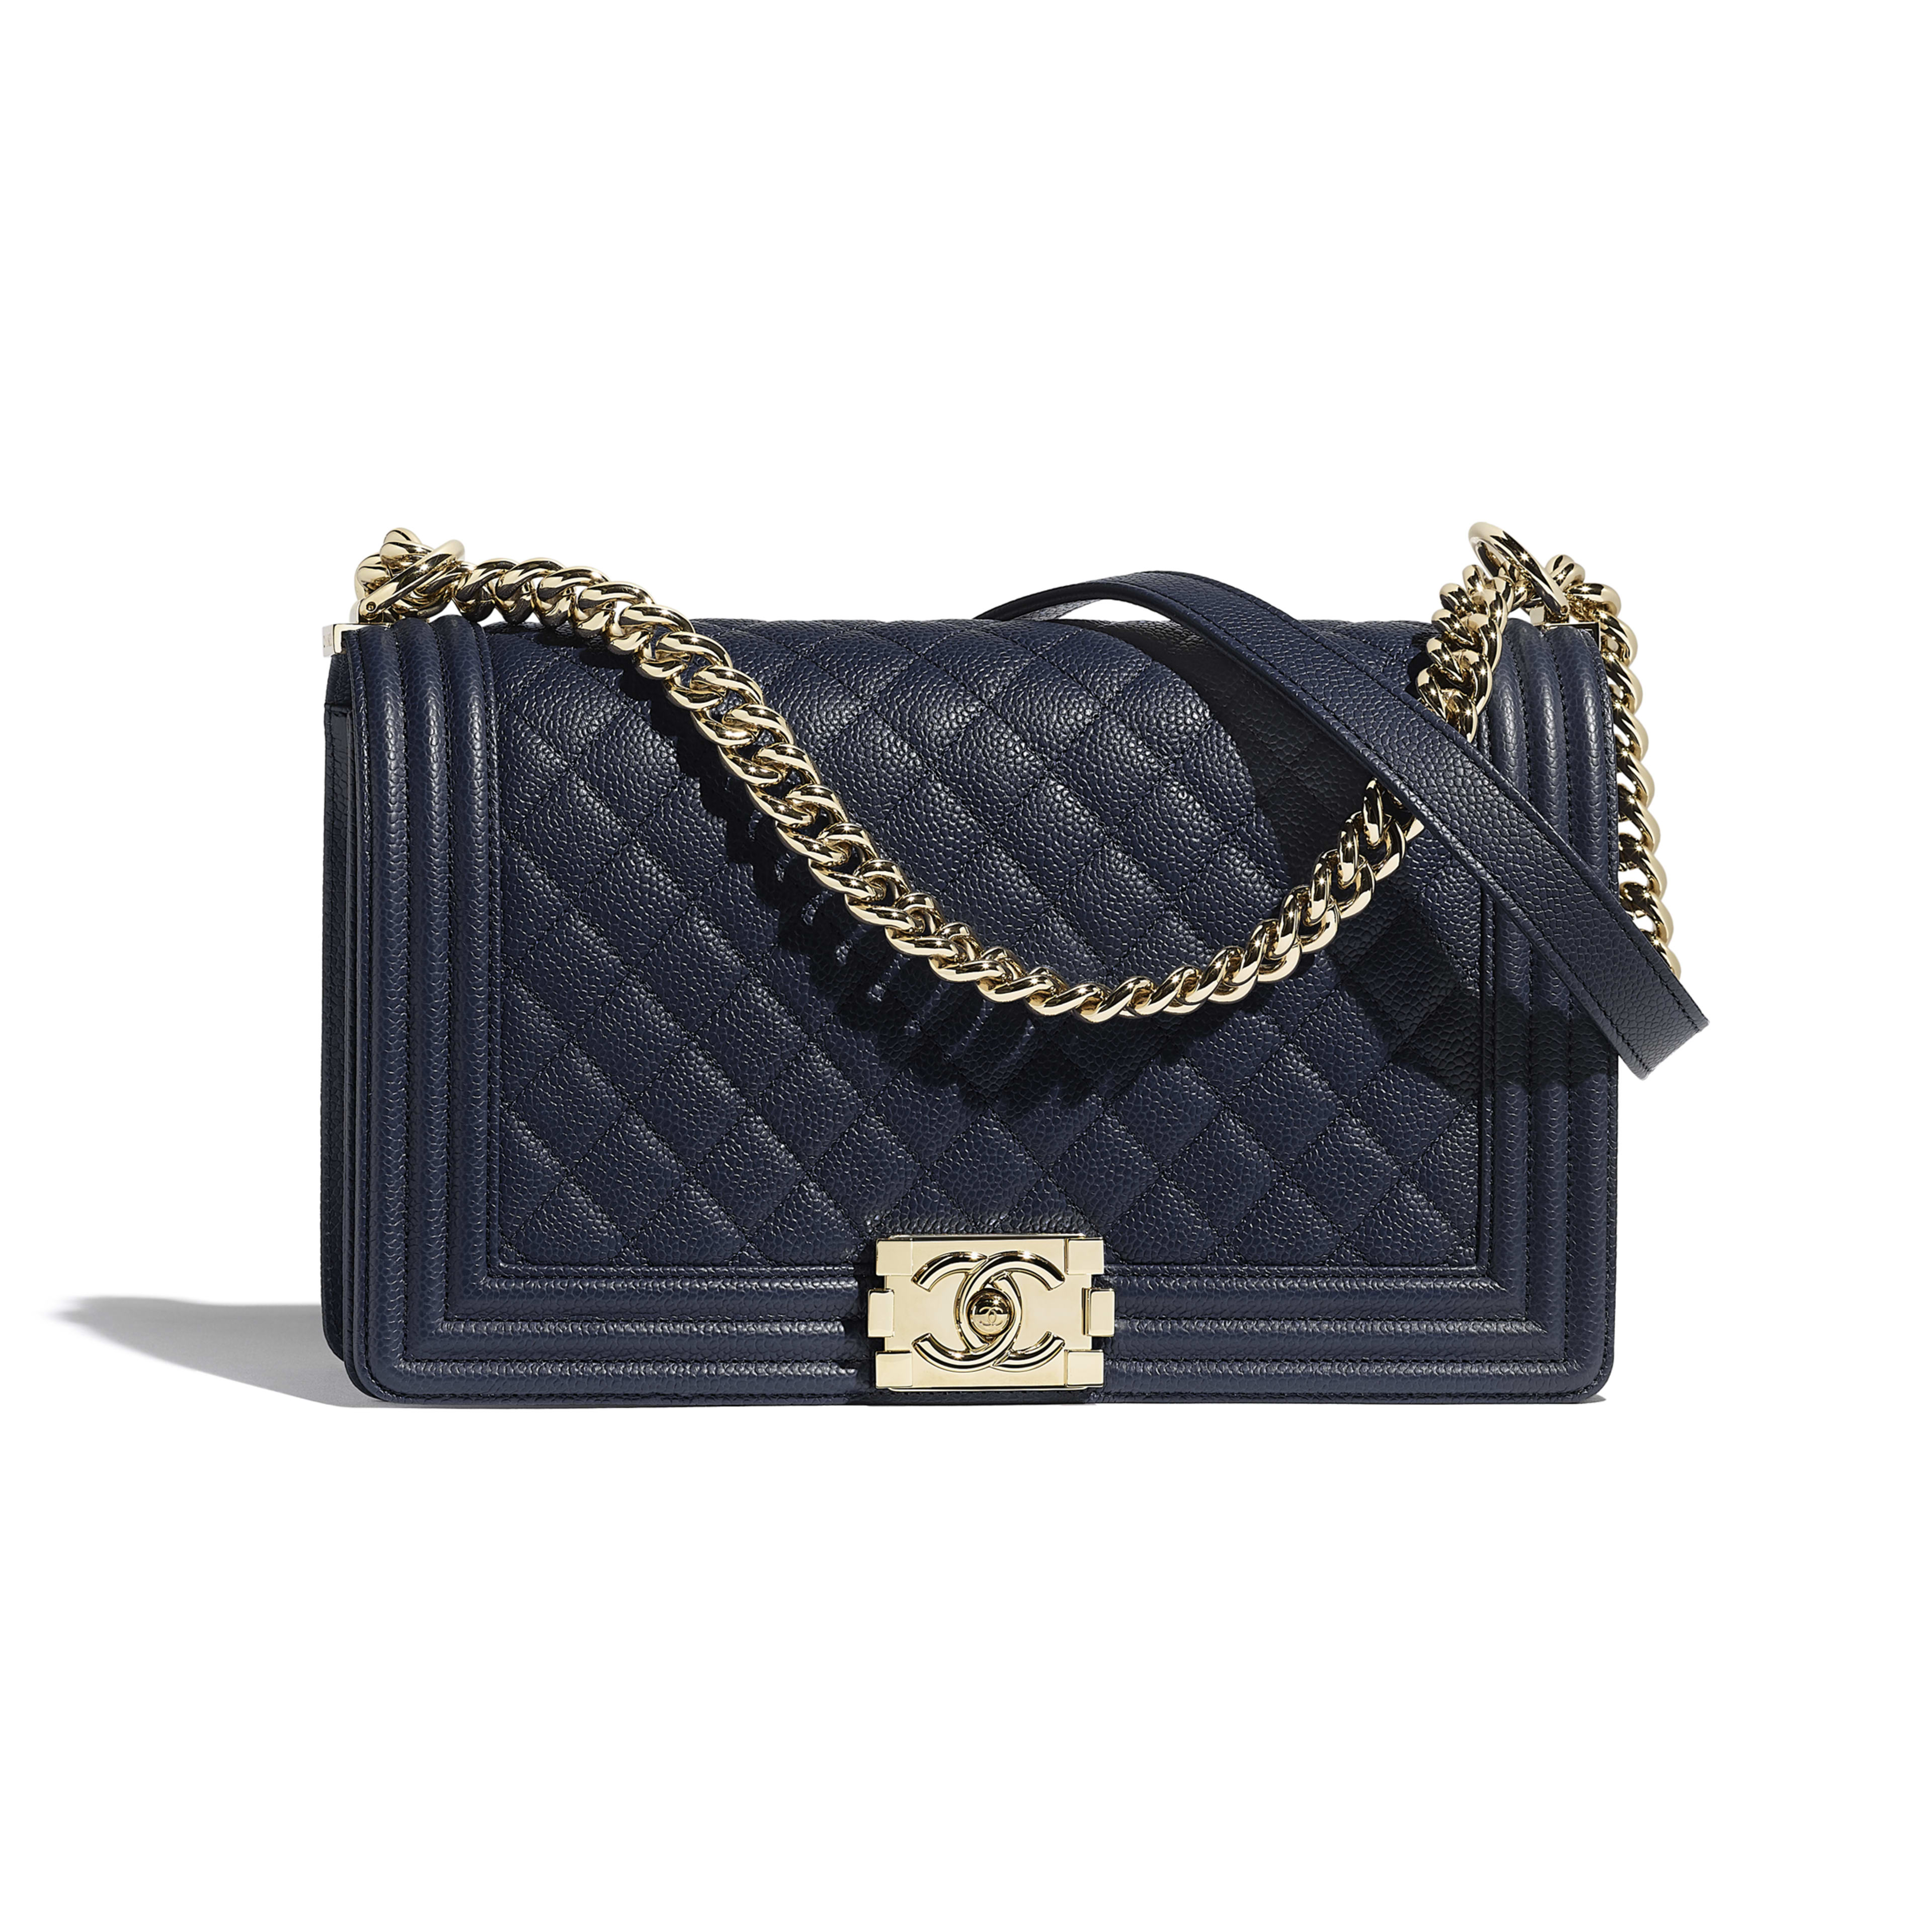 Chanel Famous Handbag Purses | IQS Executive